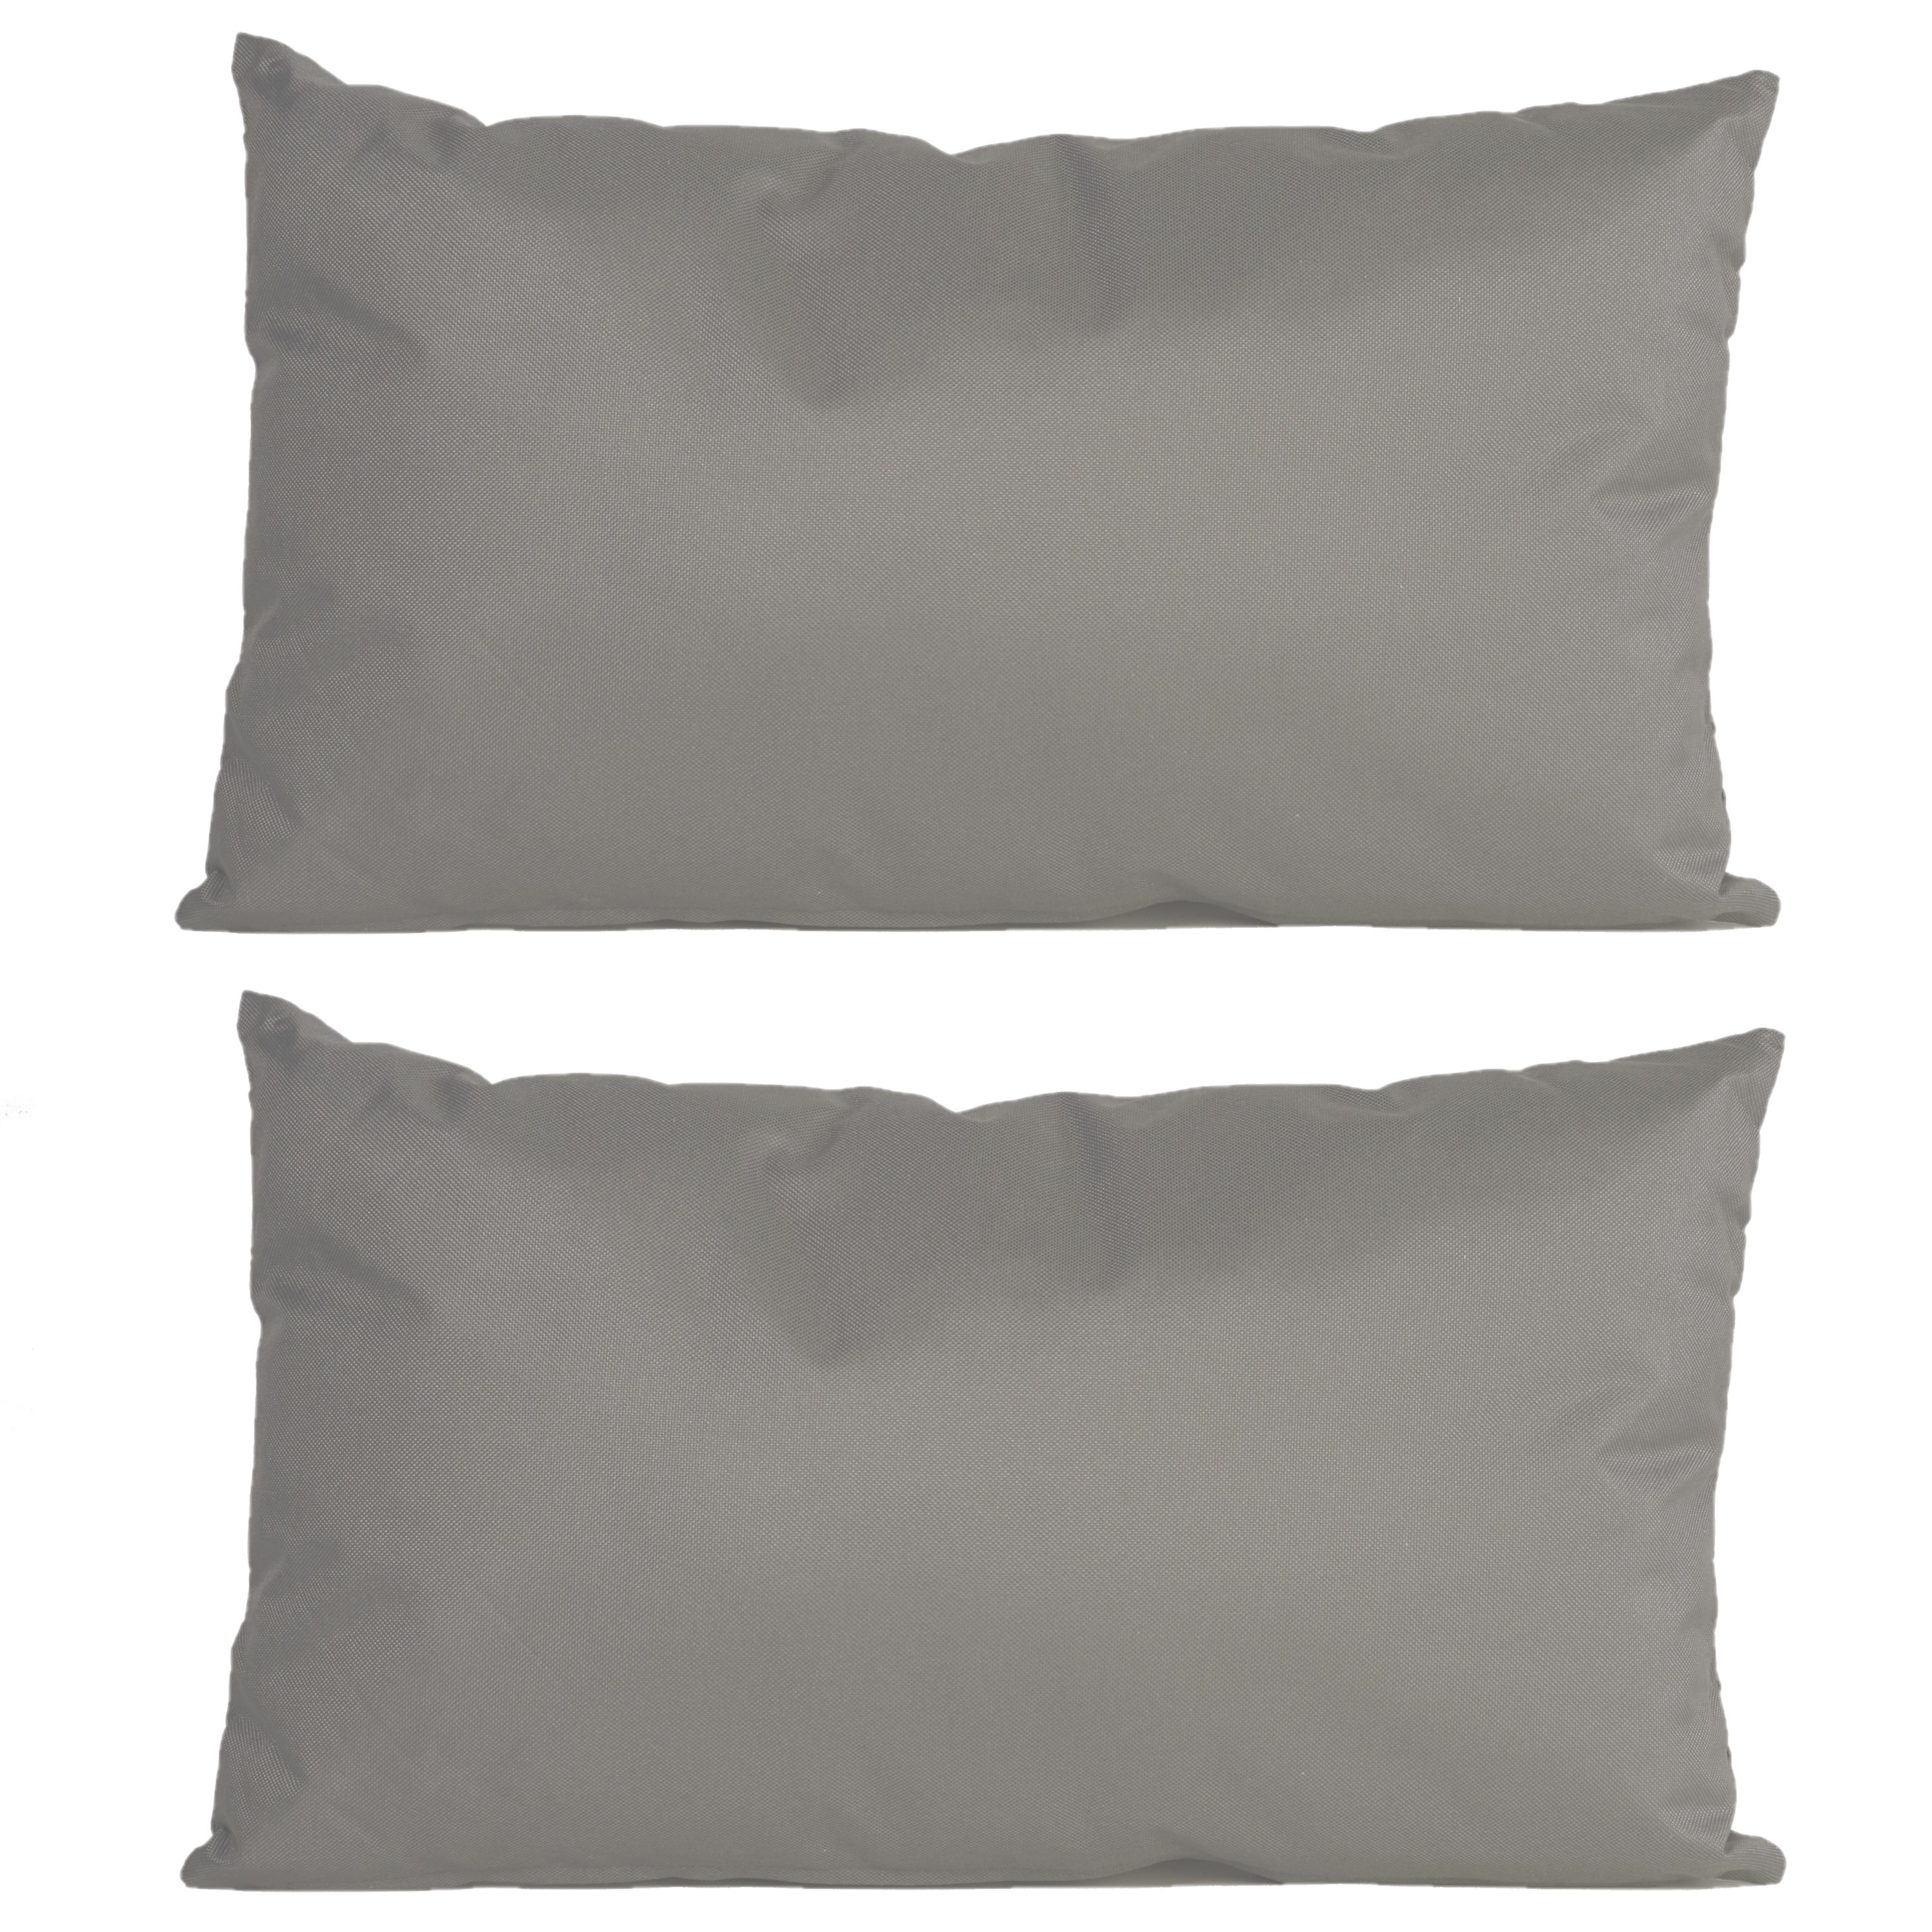 6x Bank-sier kussens voor binnen en buiten in de kleur grijs 30 x 50 cm